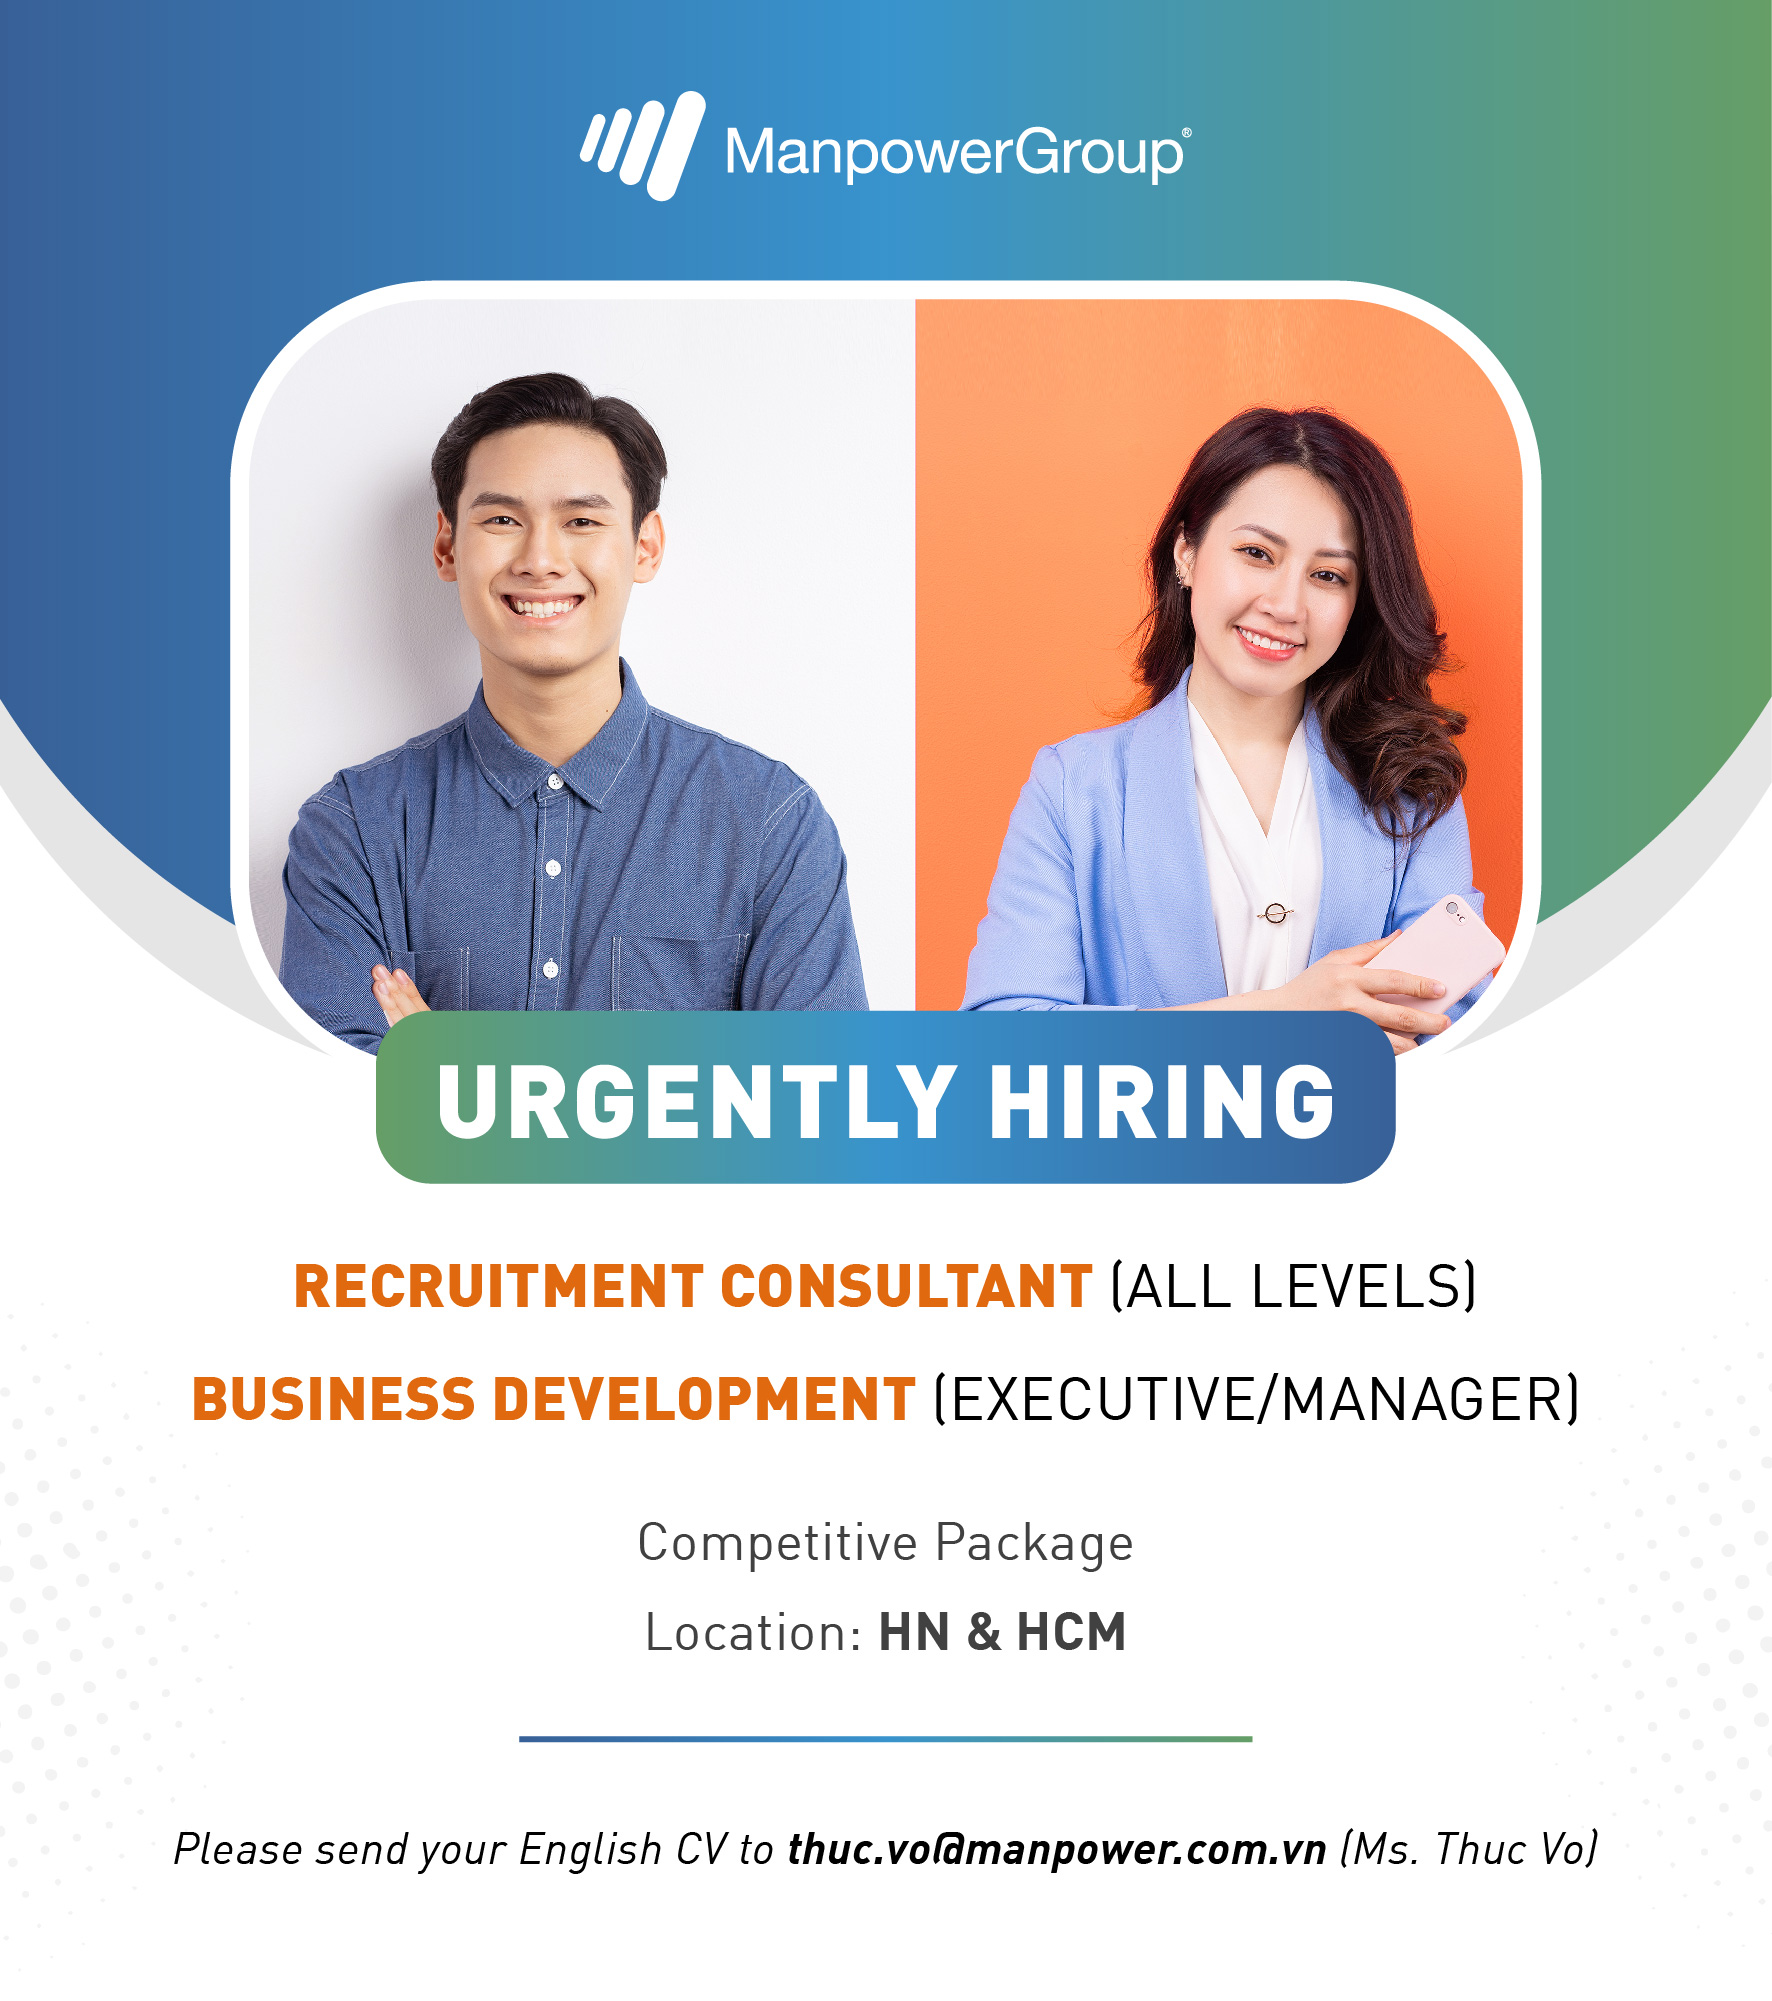 manpowergroup vietnam internal recruitment poster